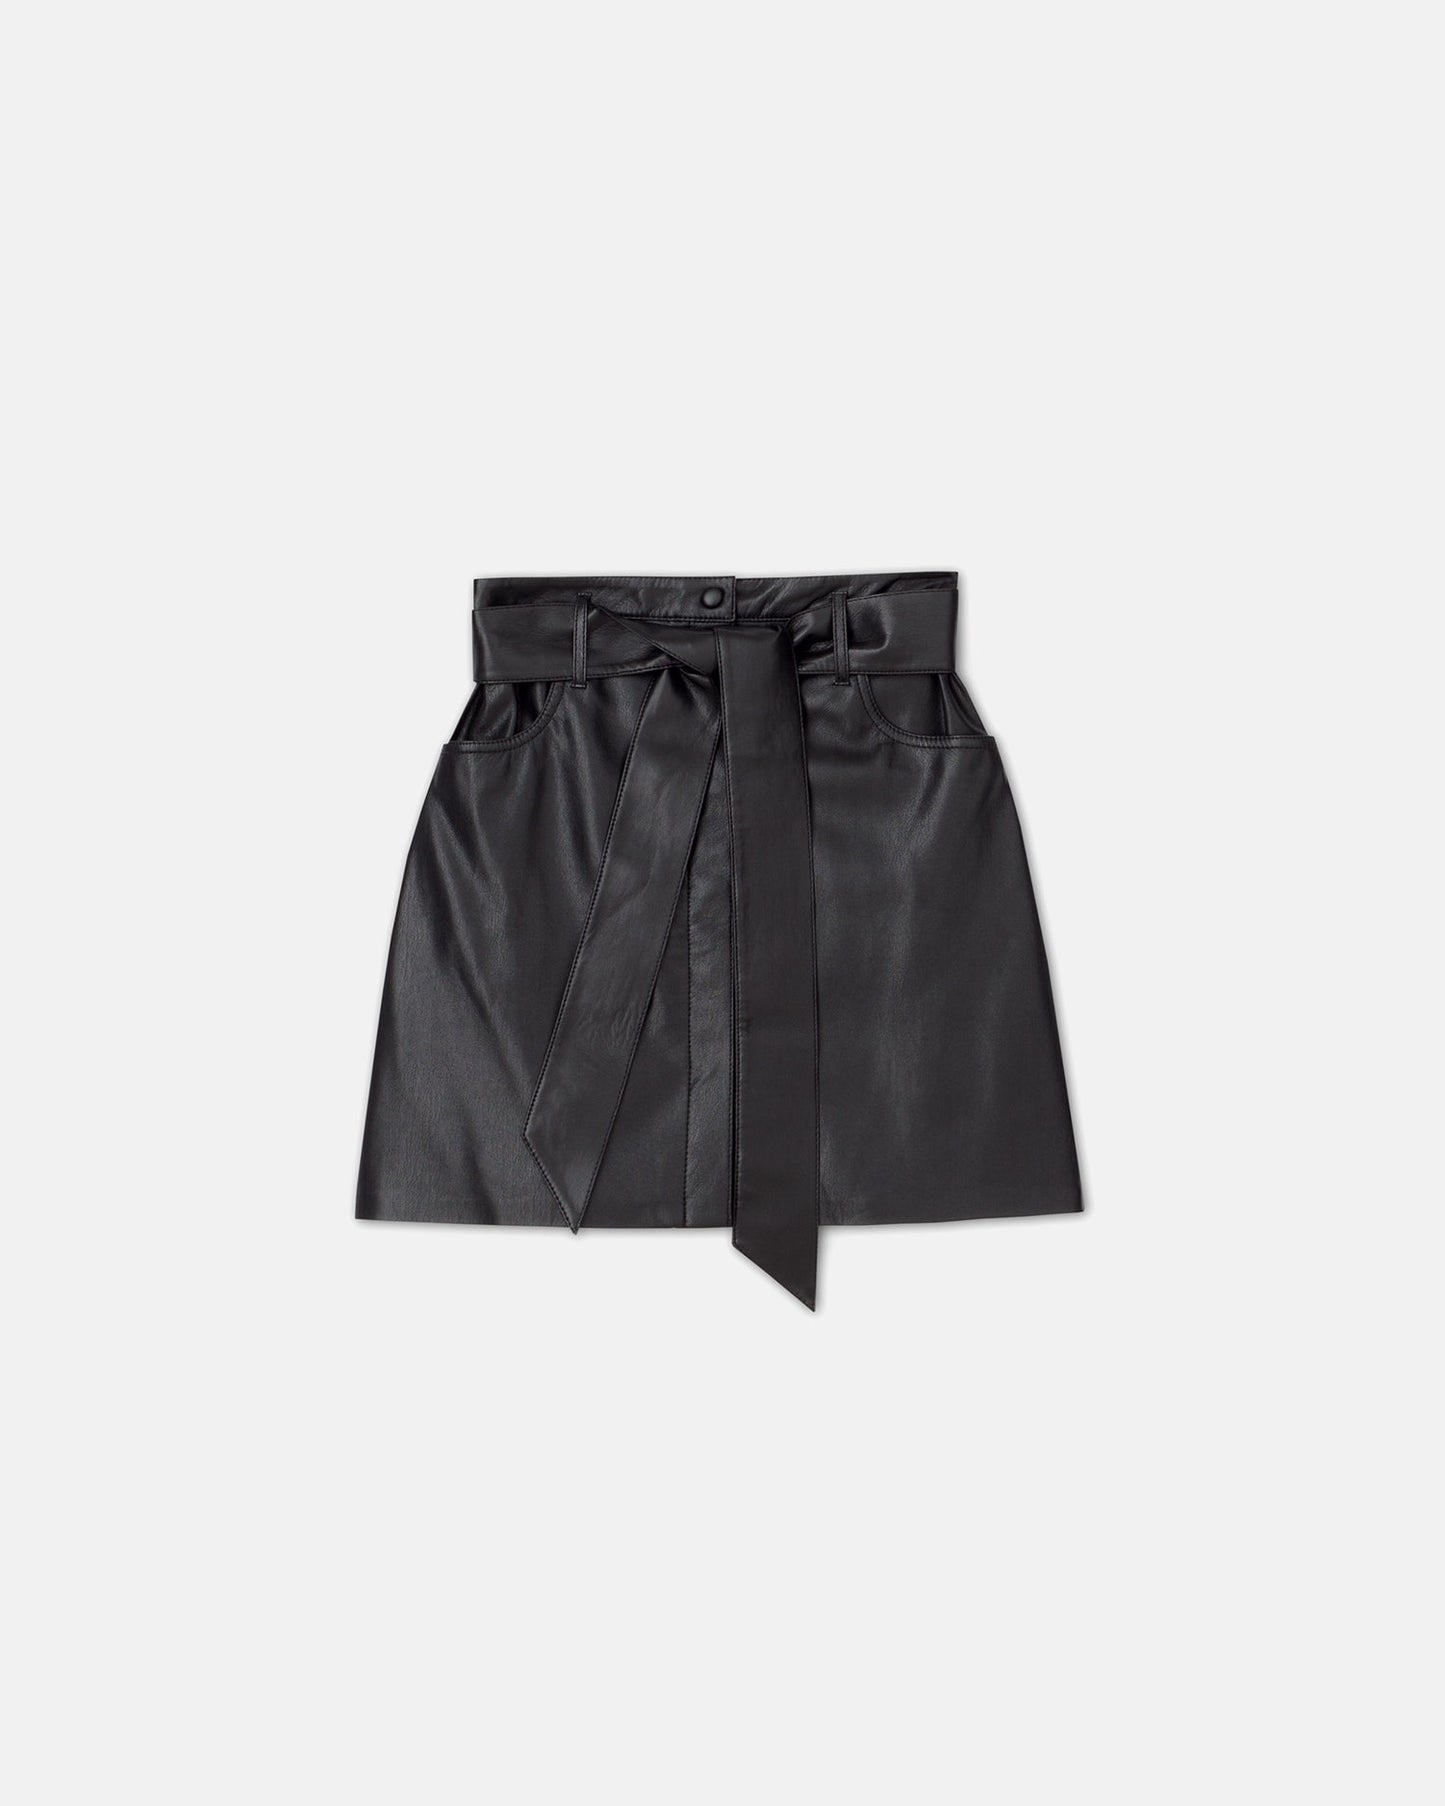 Meda - Archive Okobor™ Alt-Leather Mini Skirt - Black